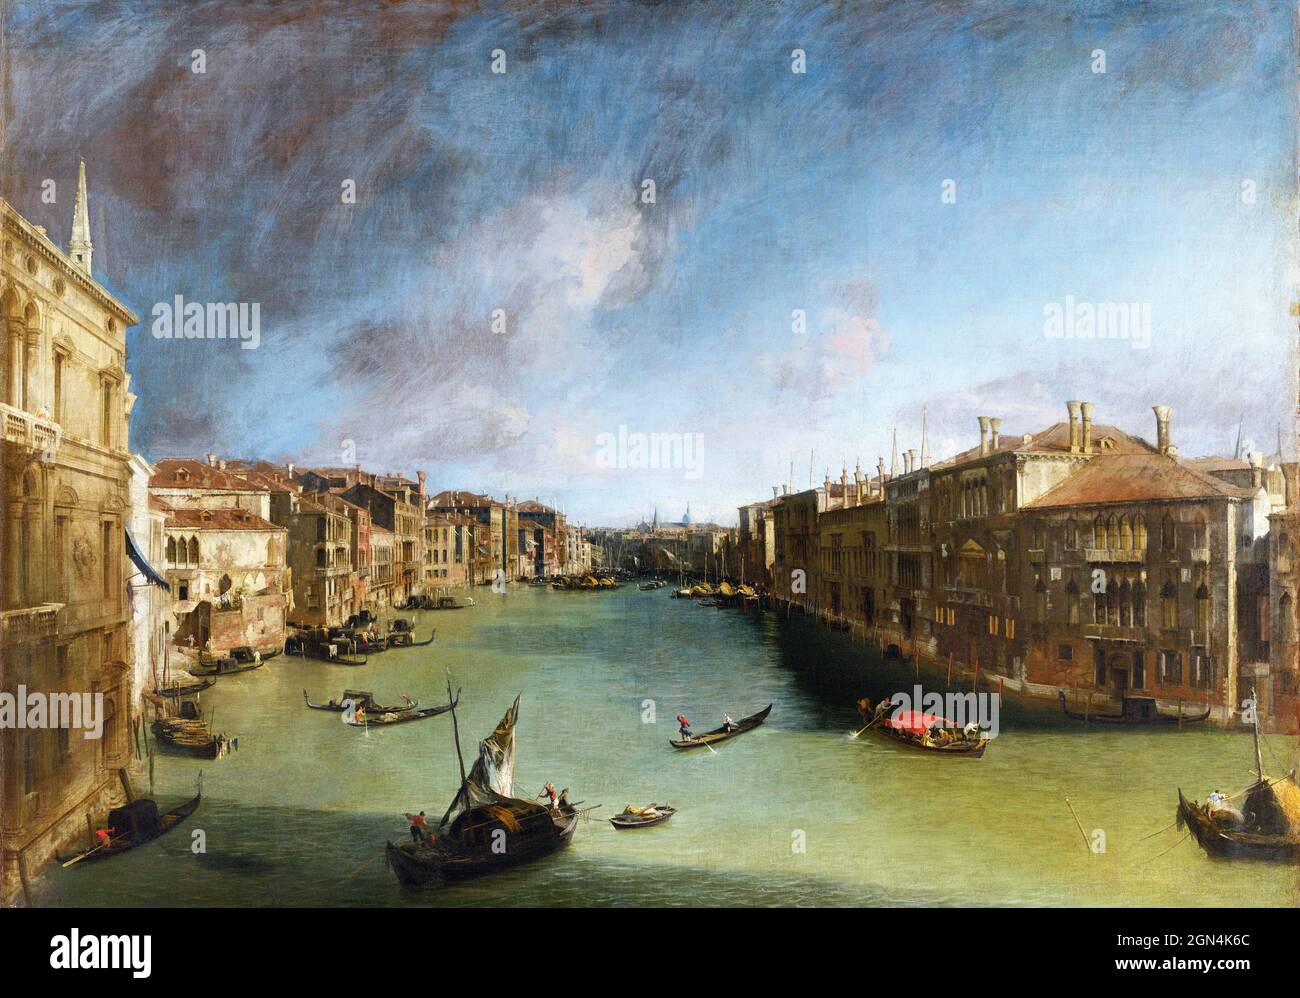 Le Grand Canal du Palazzo Balbi vers le Rialto par Canaletto (canal Giovanni Antonio - 1697-1768), huile sur toile, c. 1722 Banque D'Images